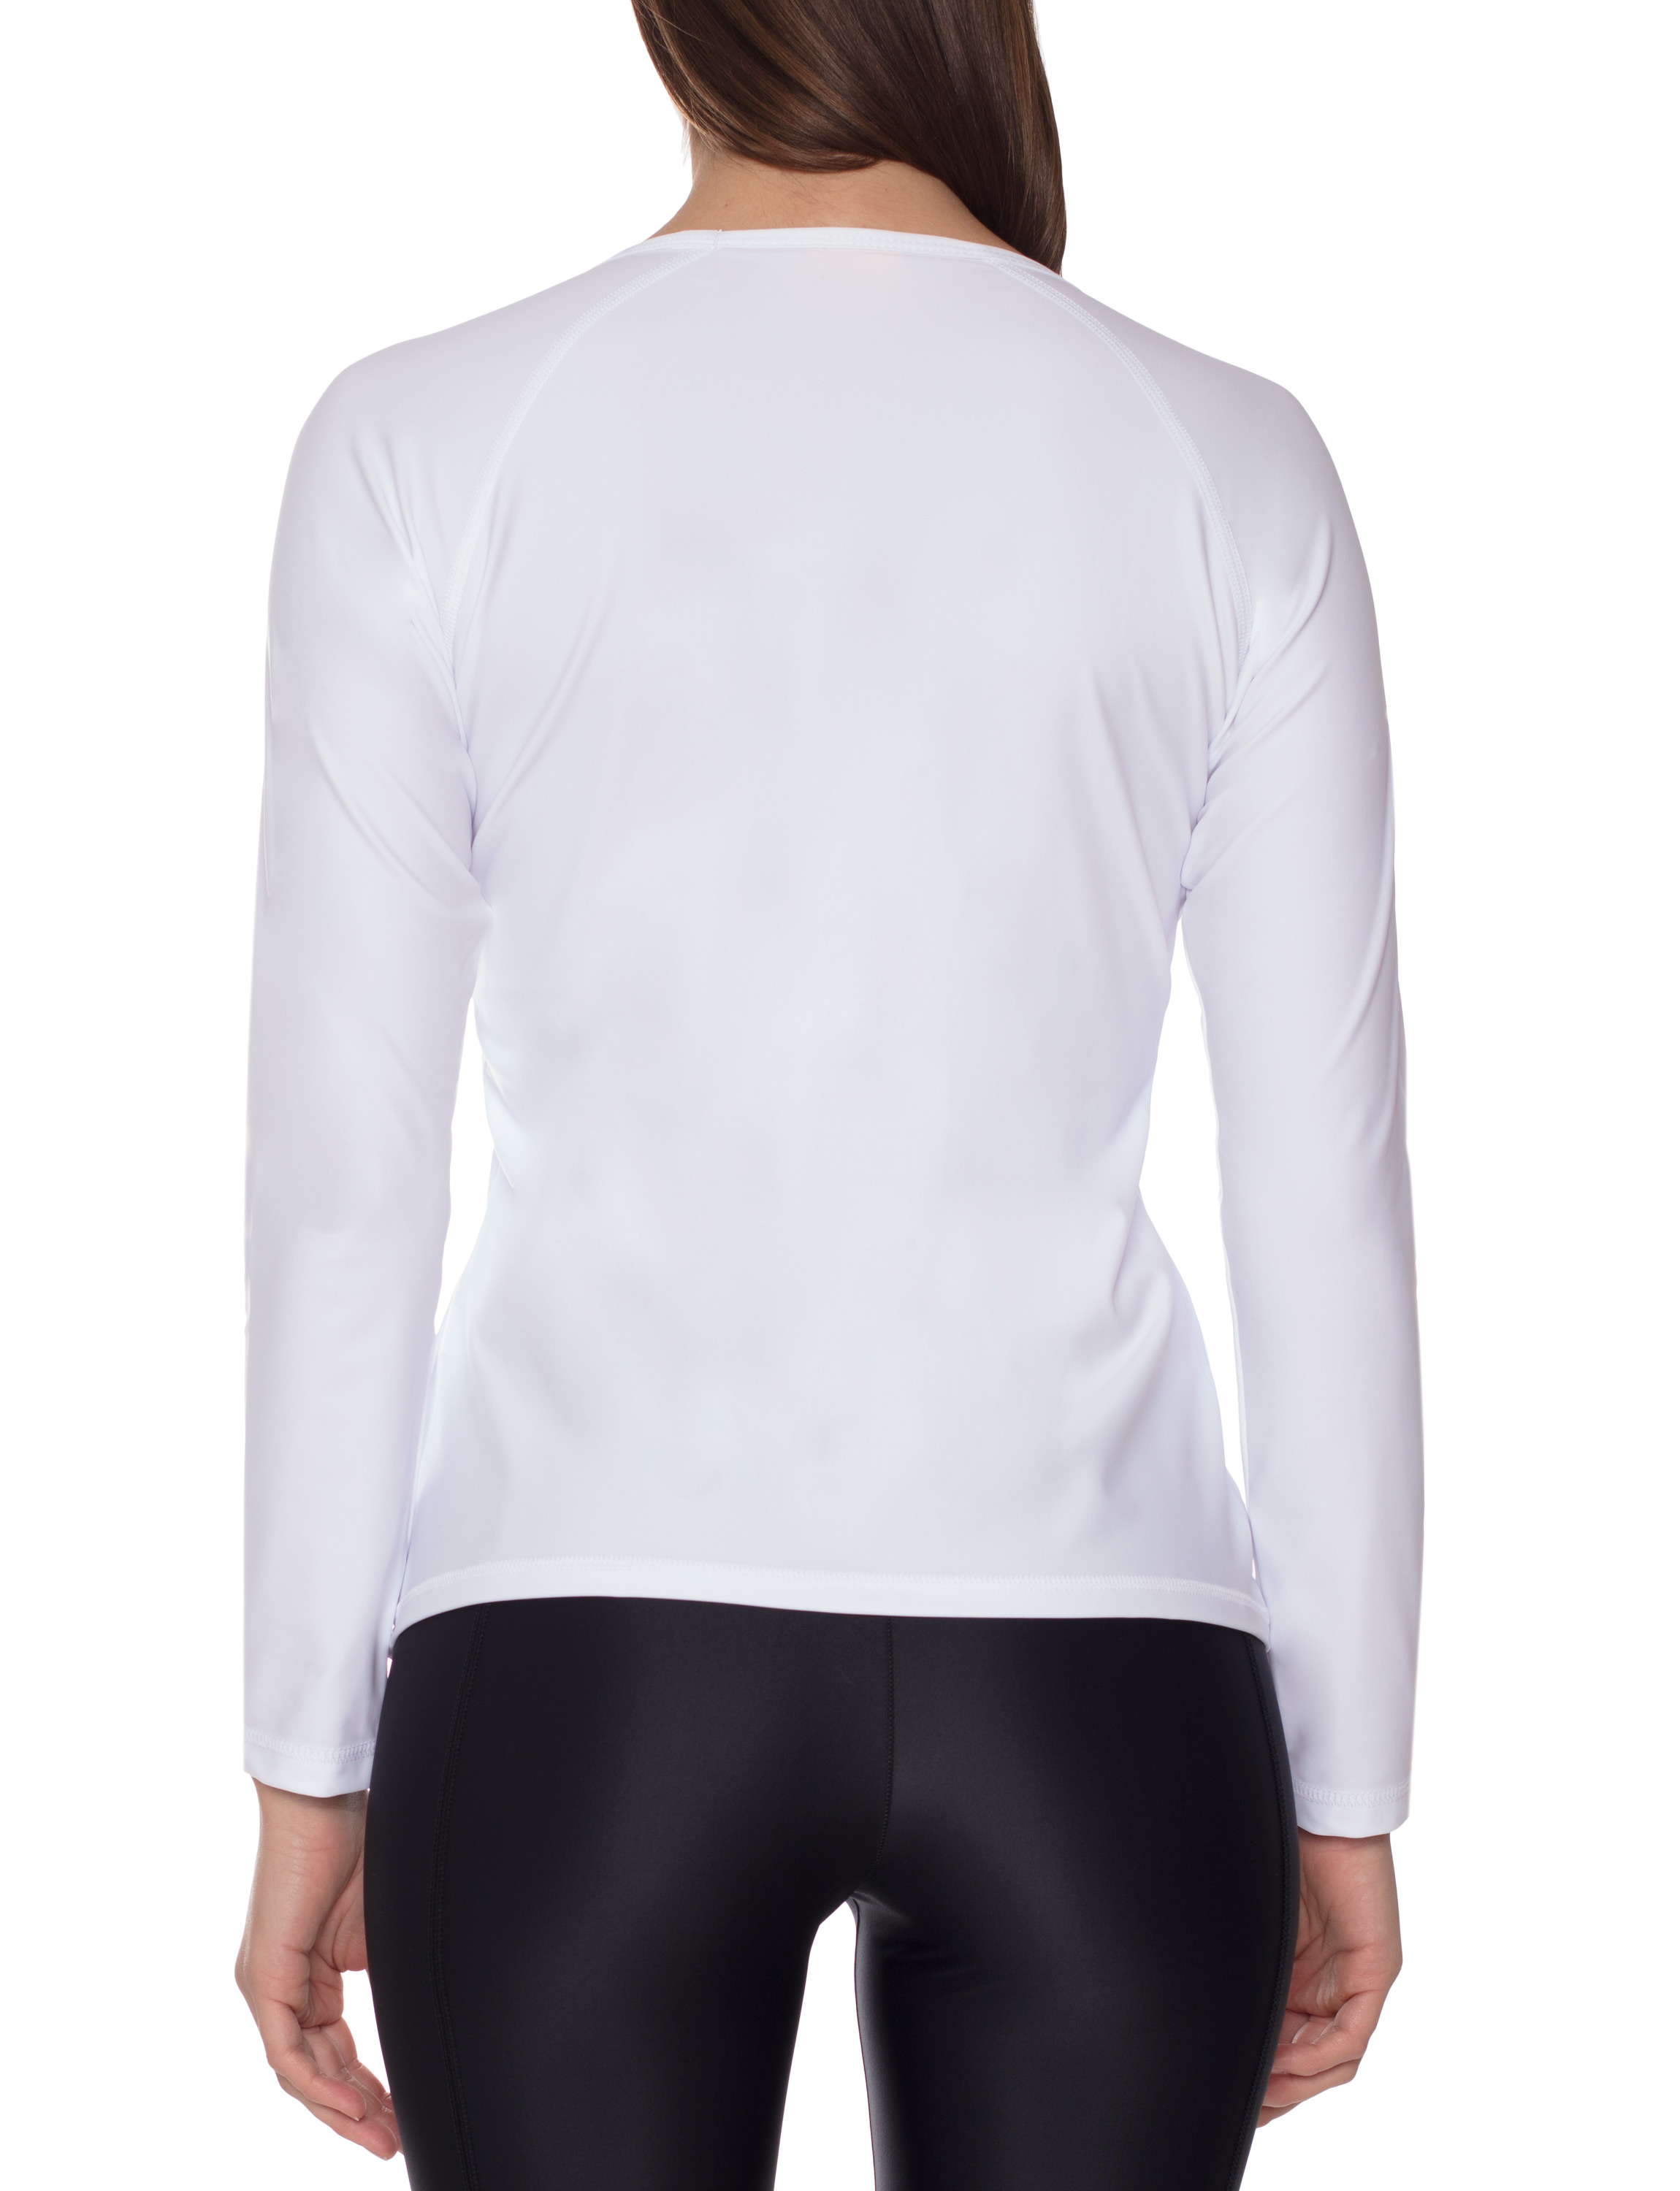 UV Sonnenschutz T-Shirt langarm elastisch UV Standard 801 und TüV geprüft weiß